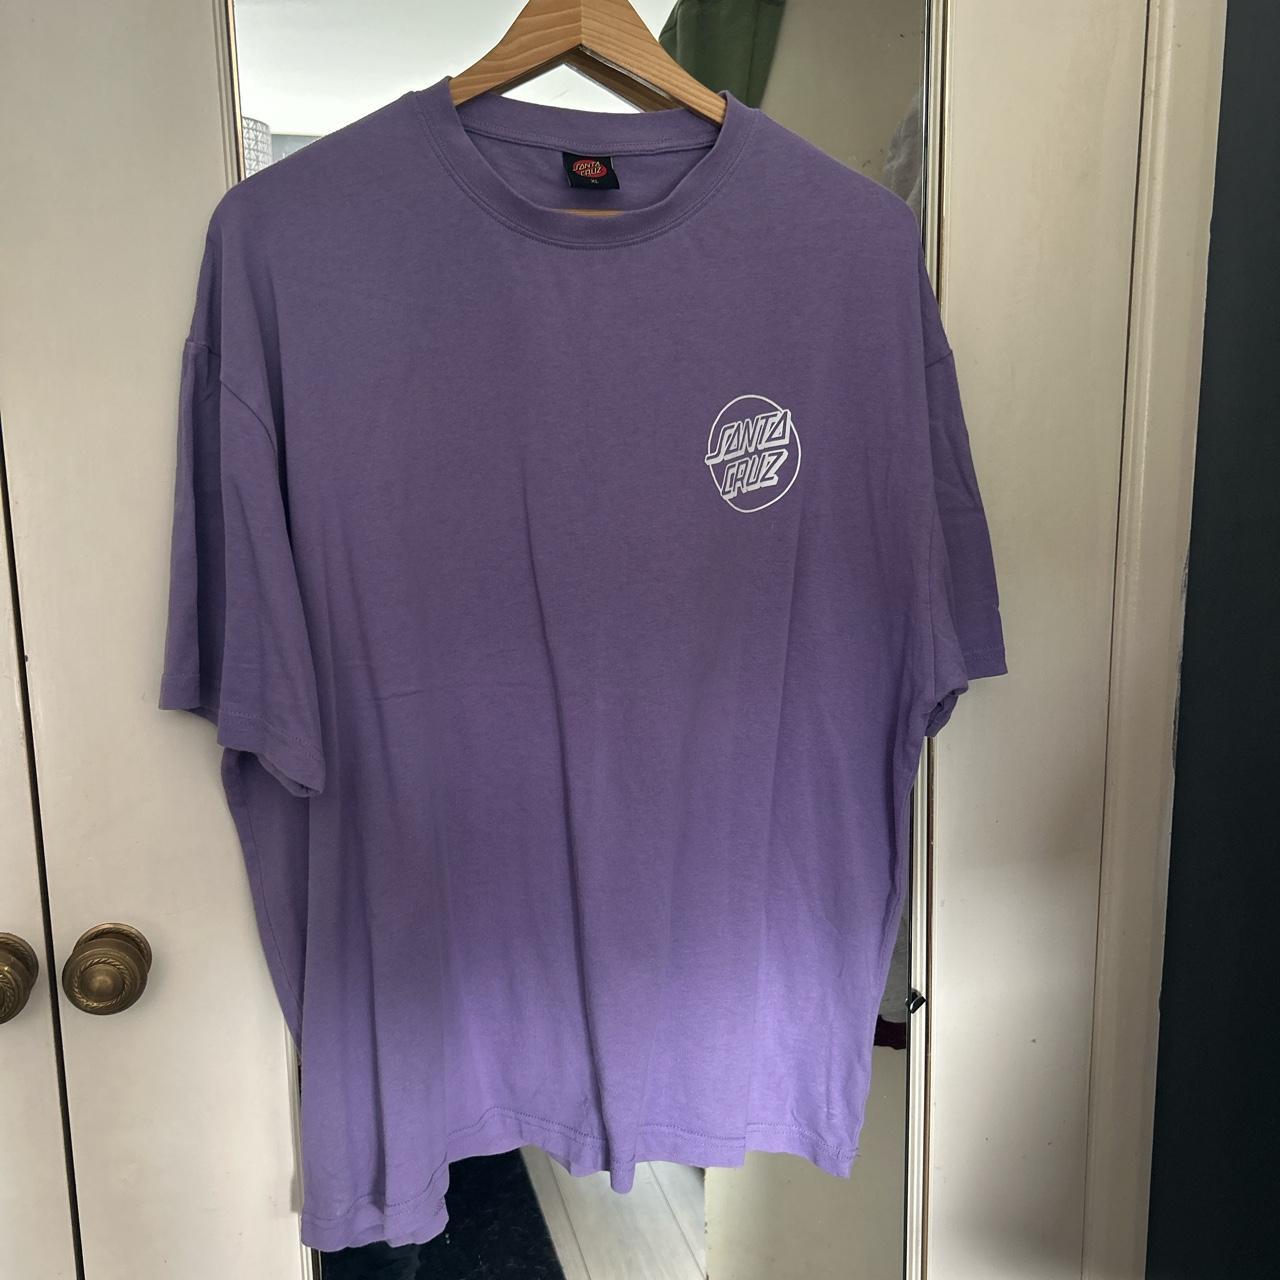 Santa Cruz purple tiki t shirt - Depop